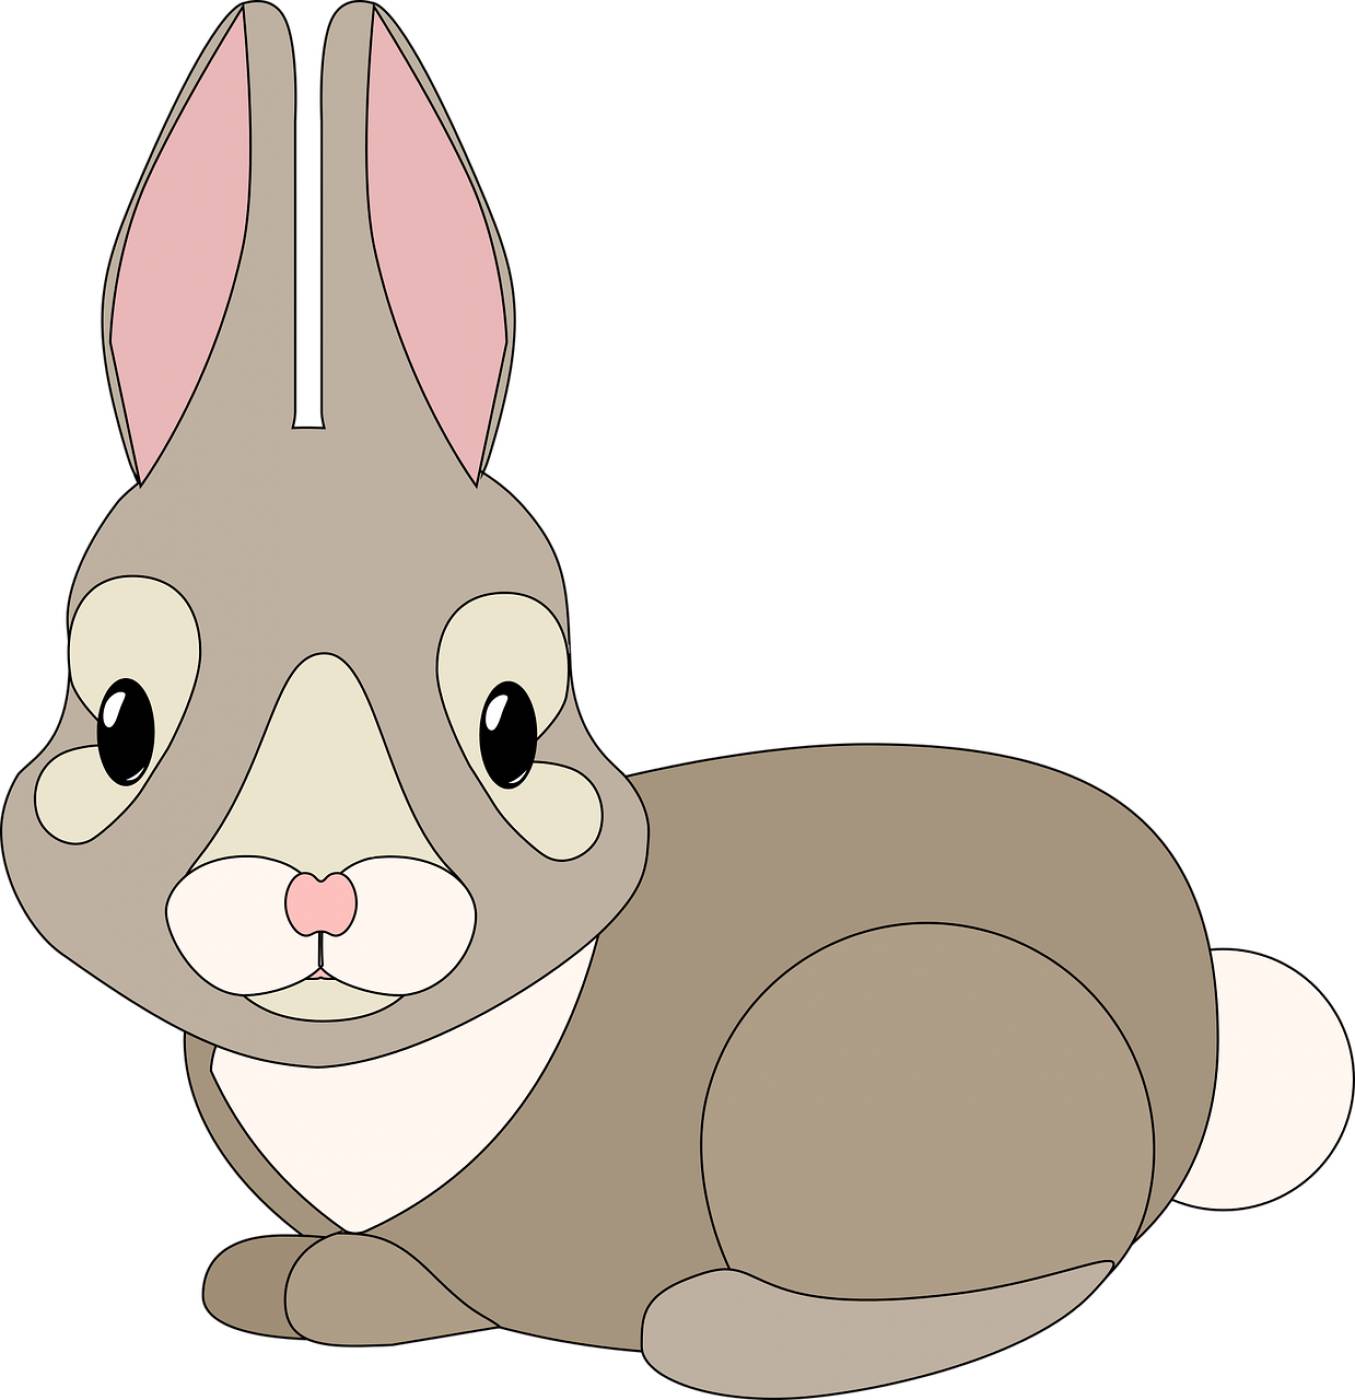 graphic bunny rebbit cute cuddly  svg vector